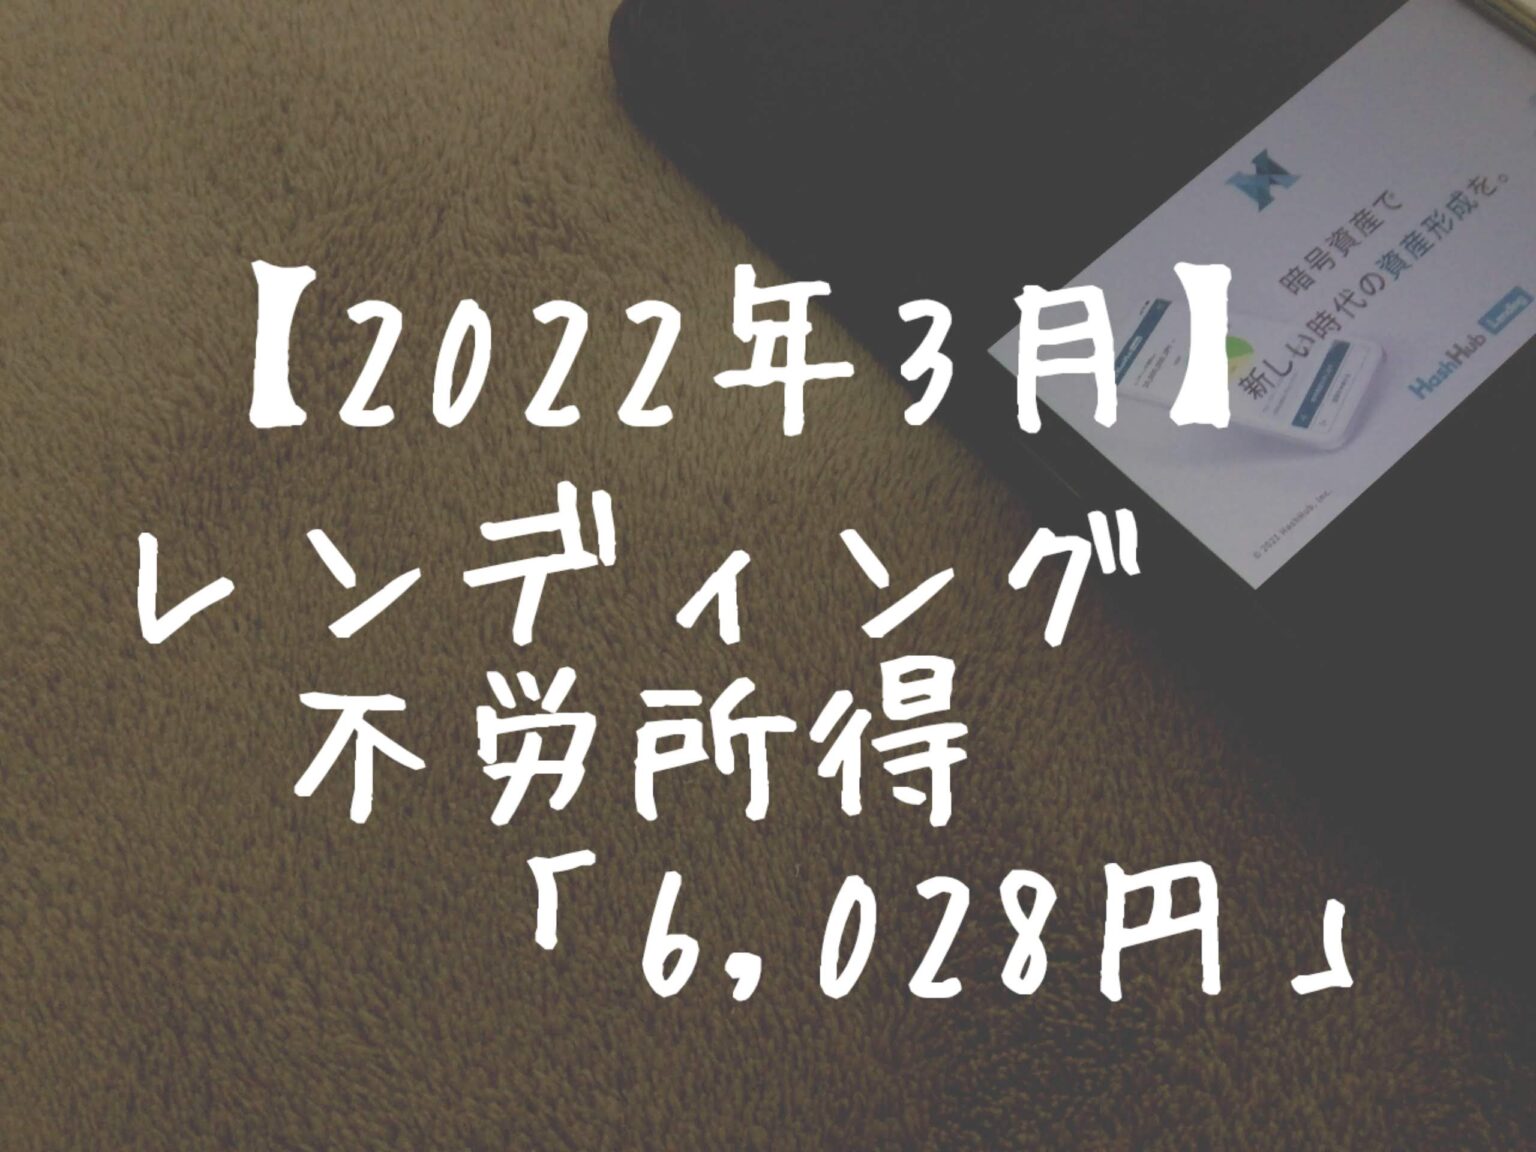 【2022年3月】レンディングからの不労所得は「6,028円」でした！